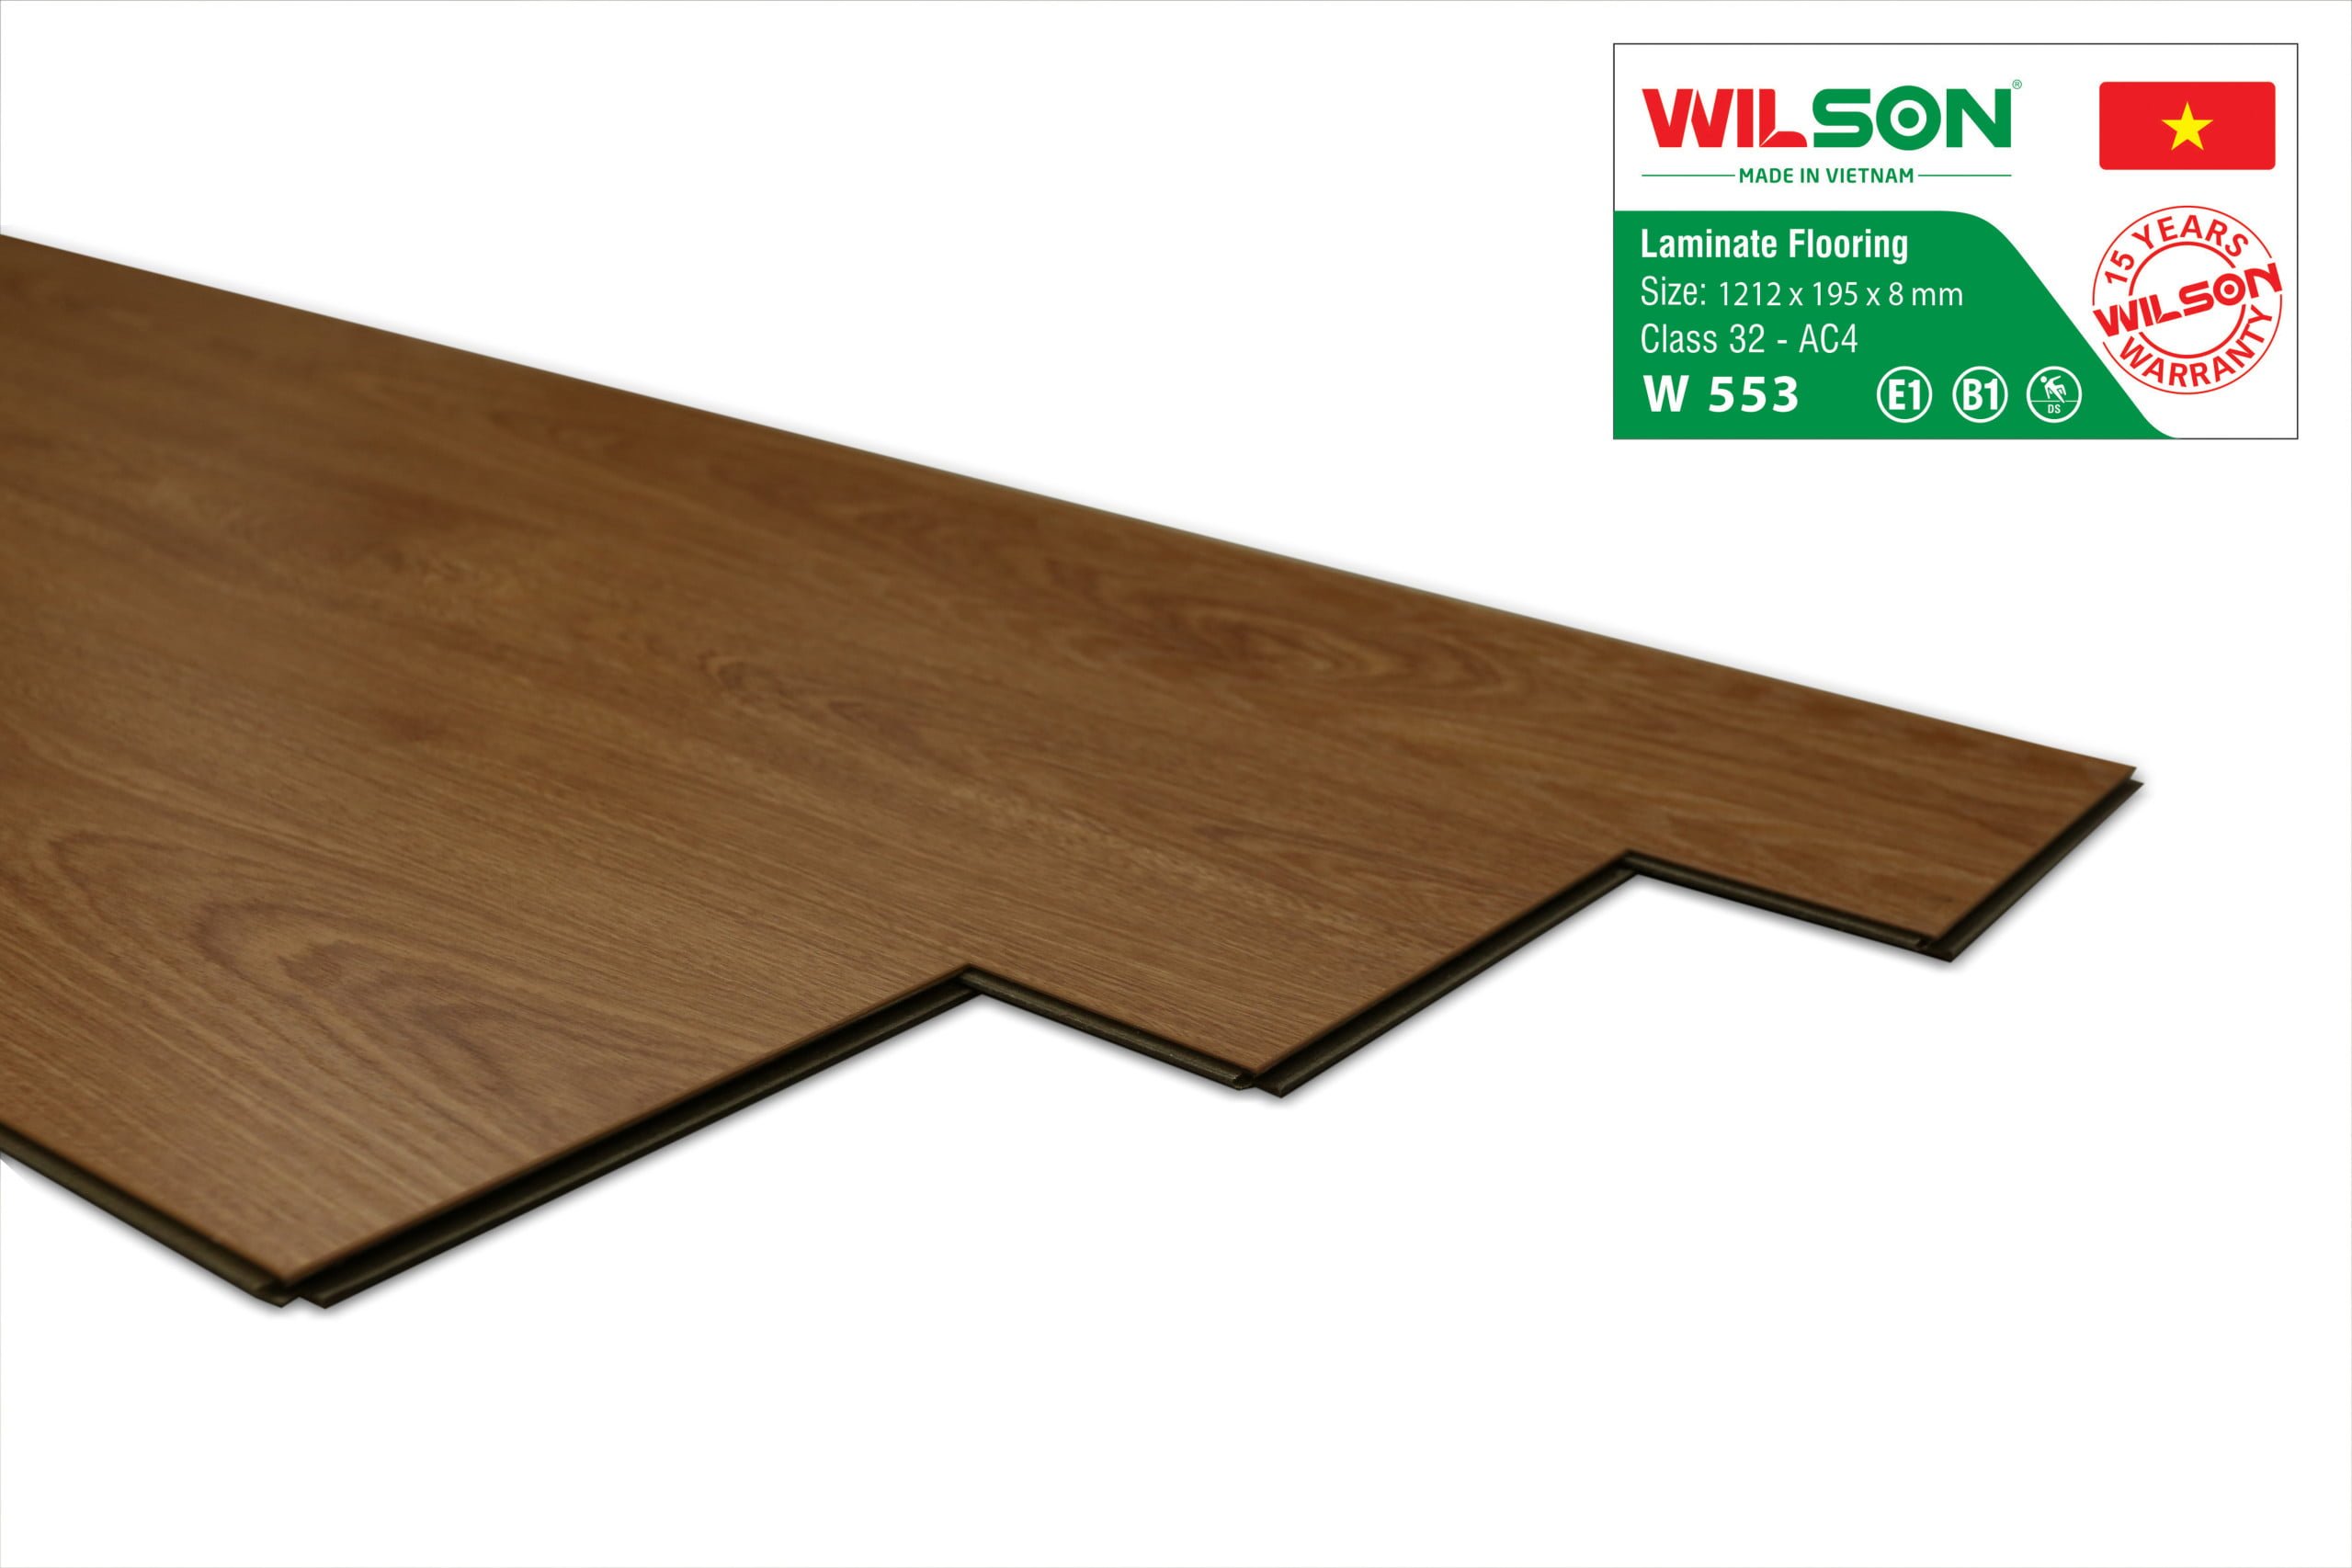 sàn gồ wilson w553 tại tổng kho sàn gỗ an pha